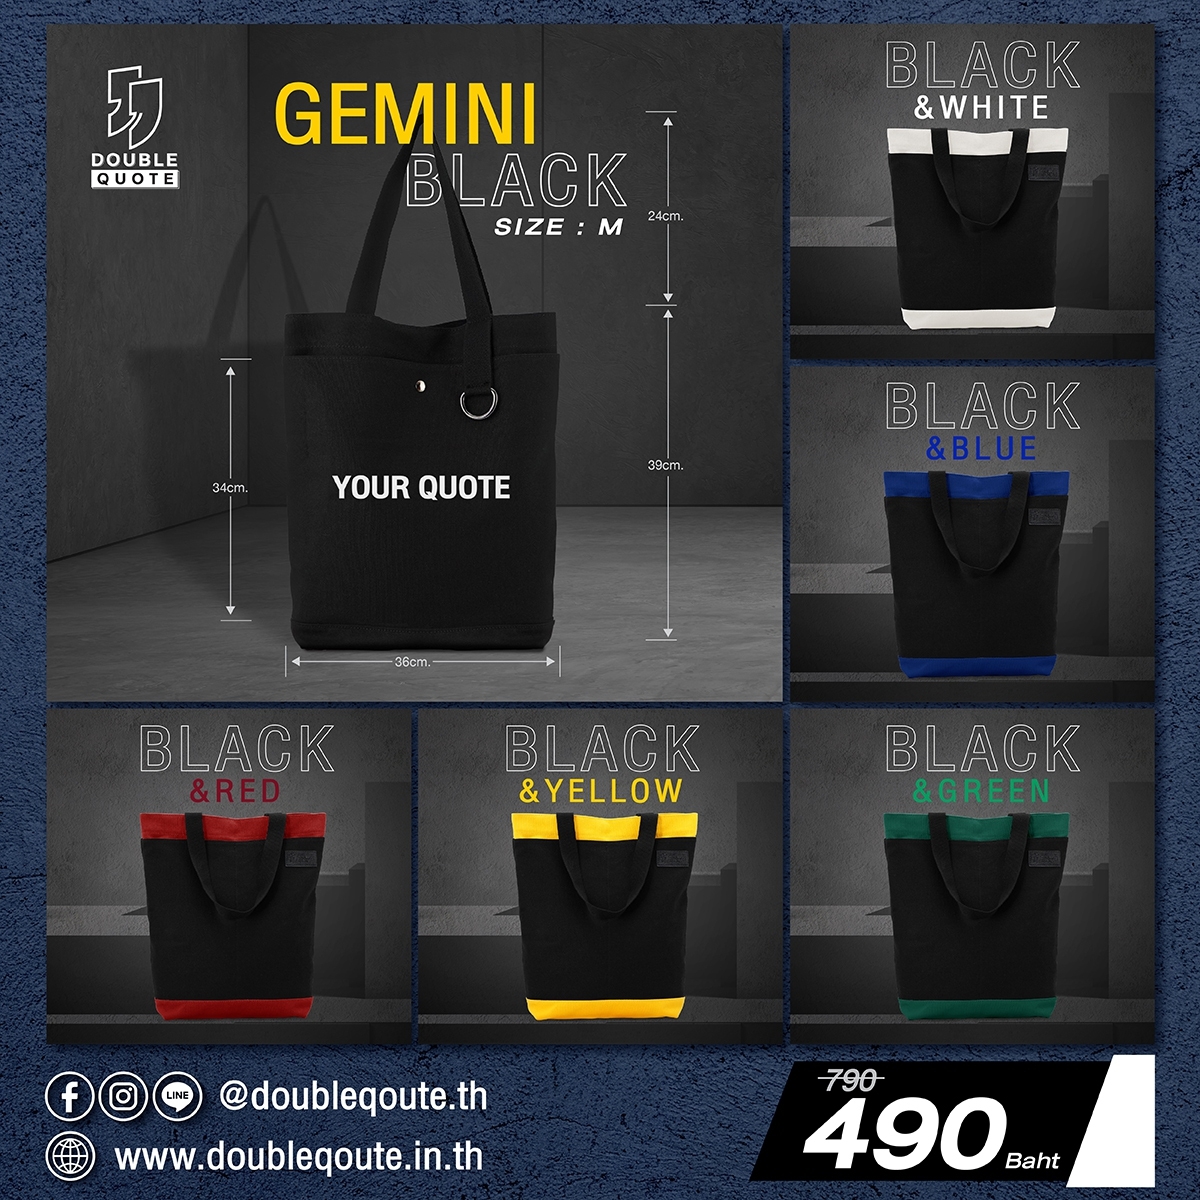 Gemini Black (M)